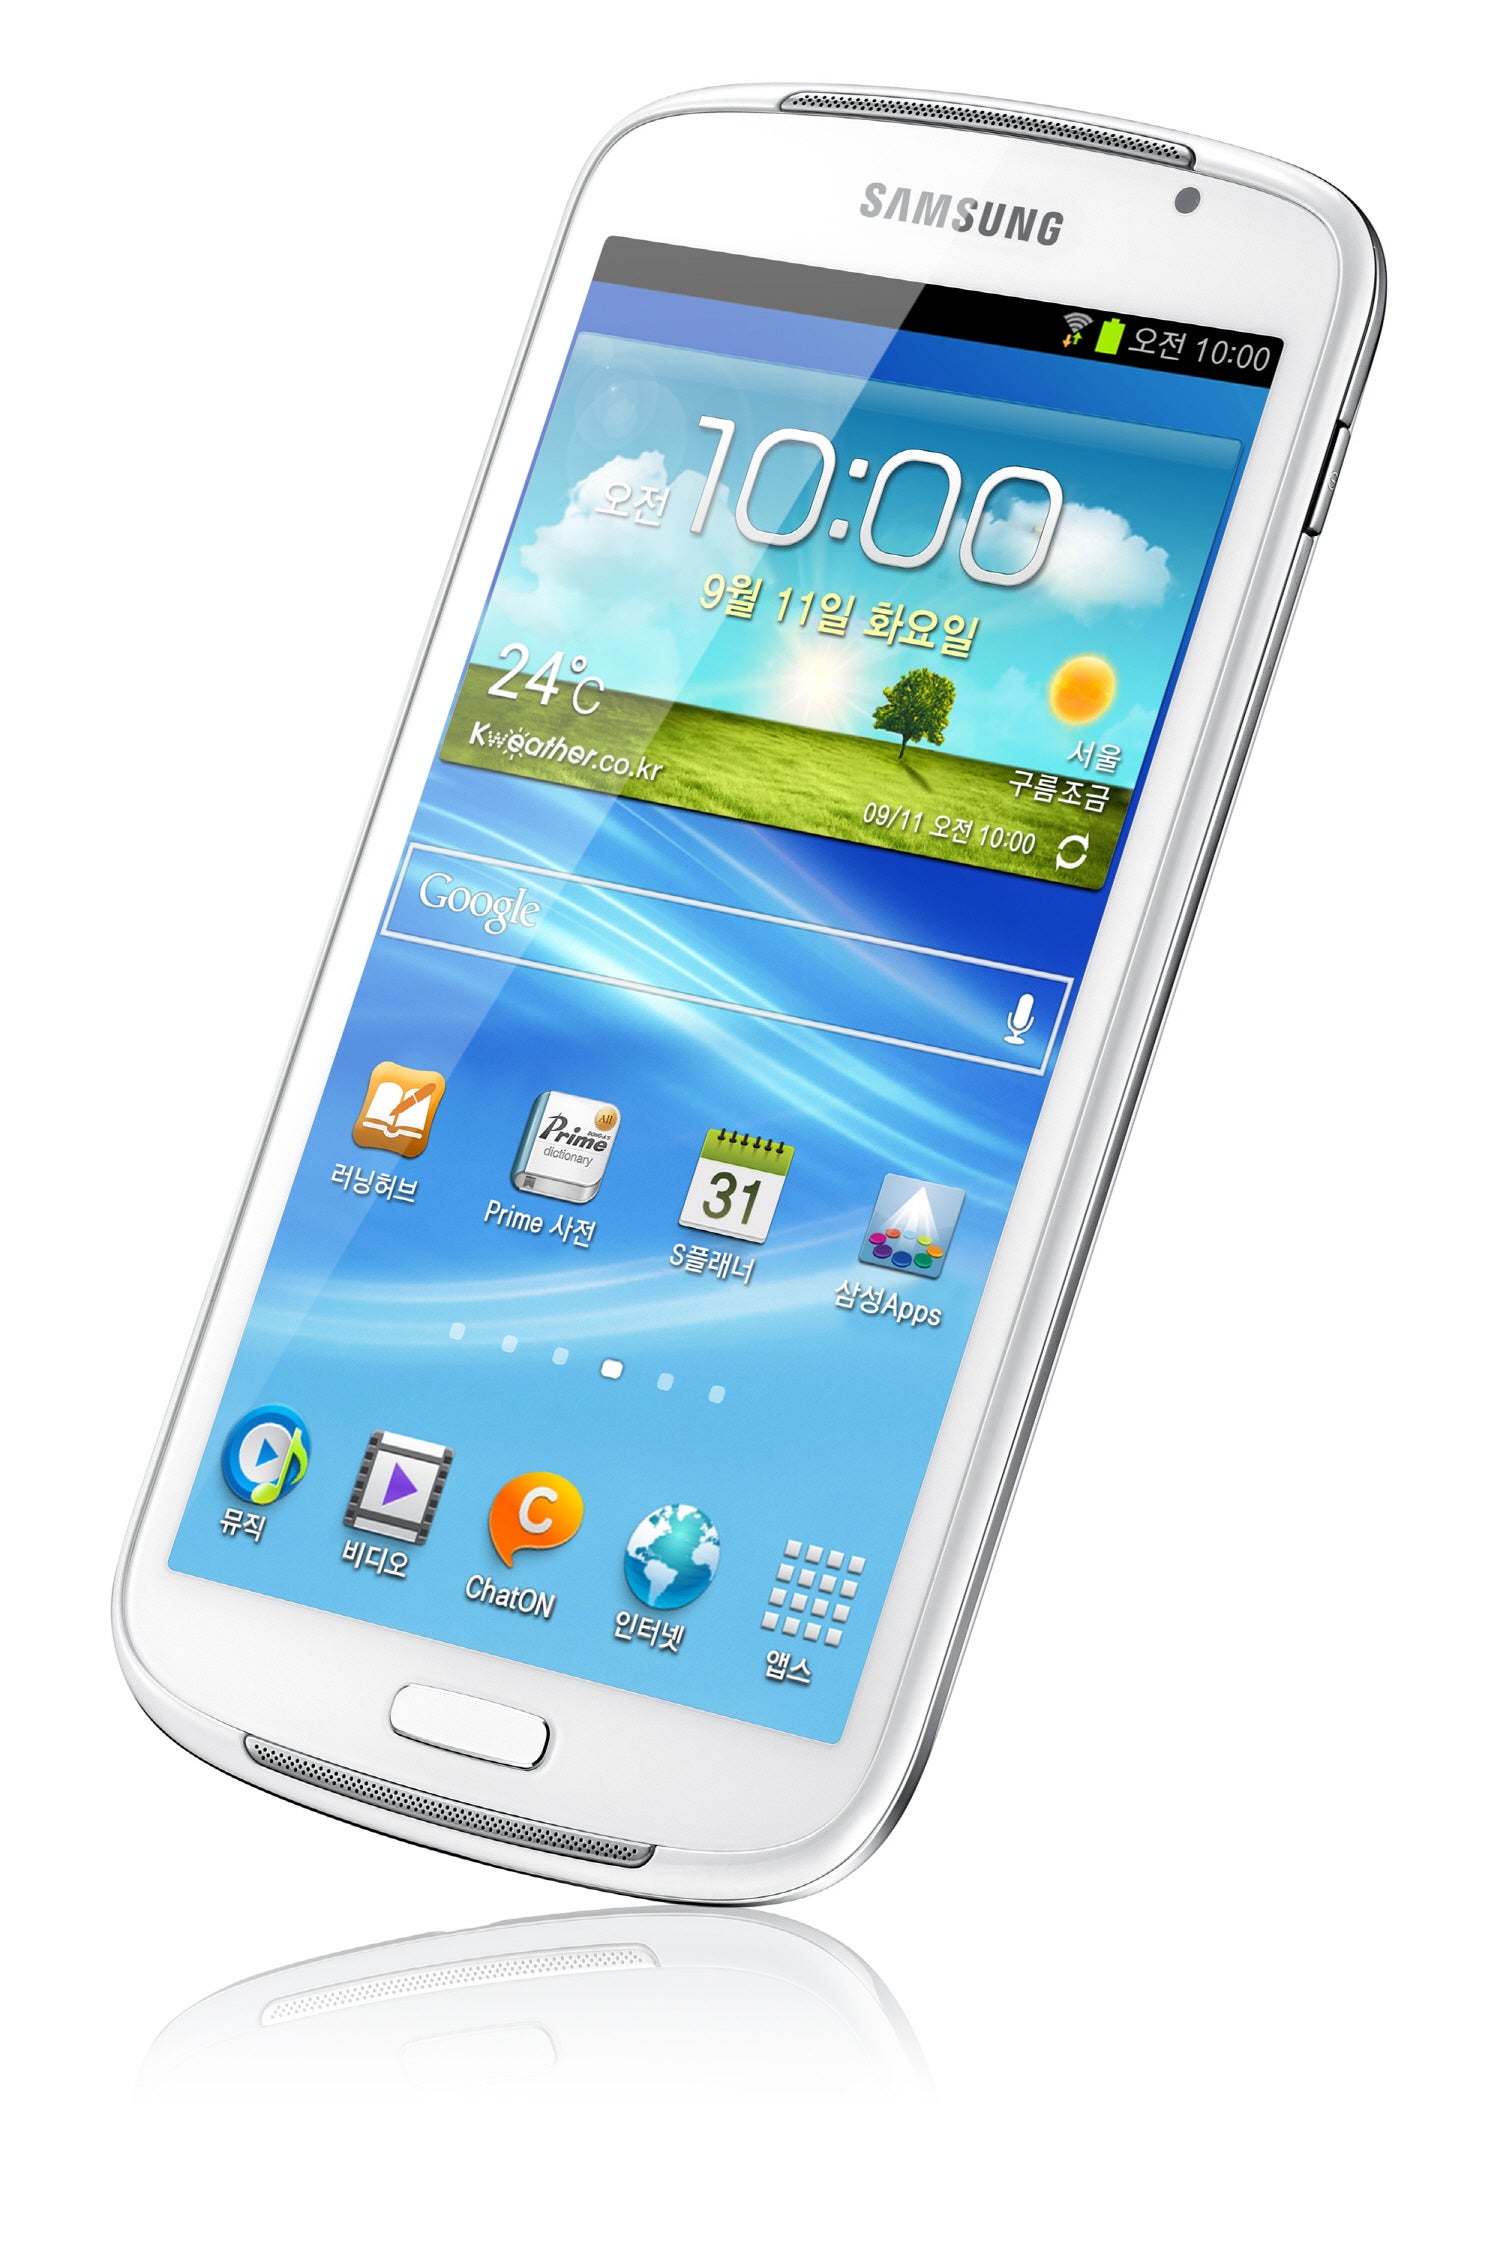 Samsung Galaxy Player 5.8 - Samsung Galaxy Player 5.8 is now official – jumbo-sized Galaxy S III look-alike